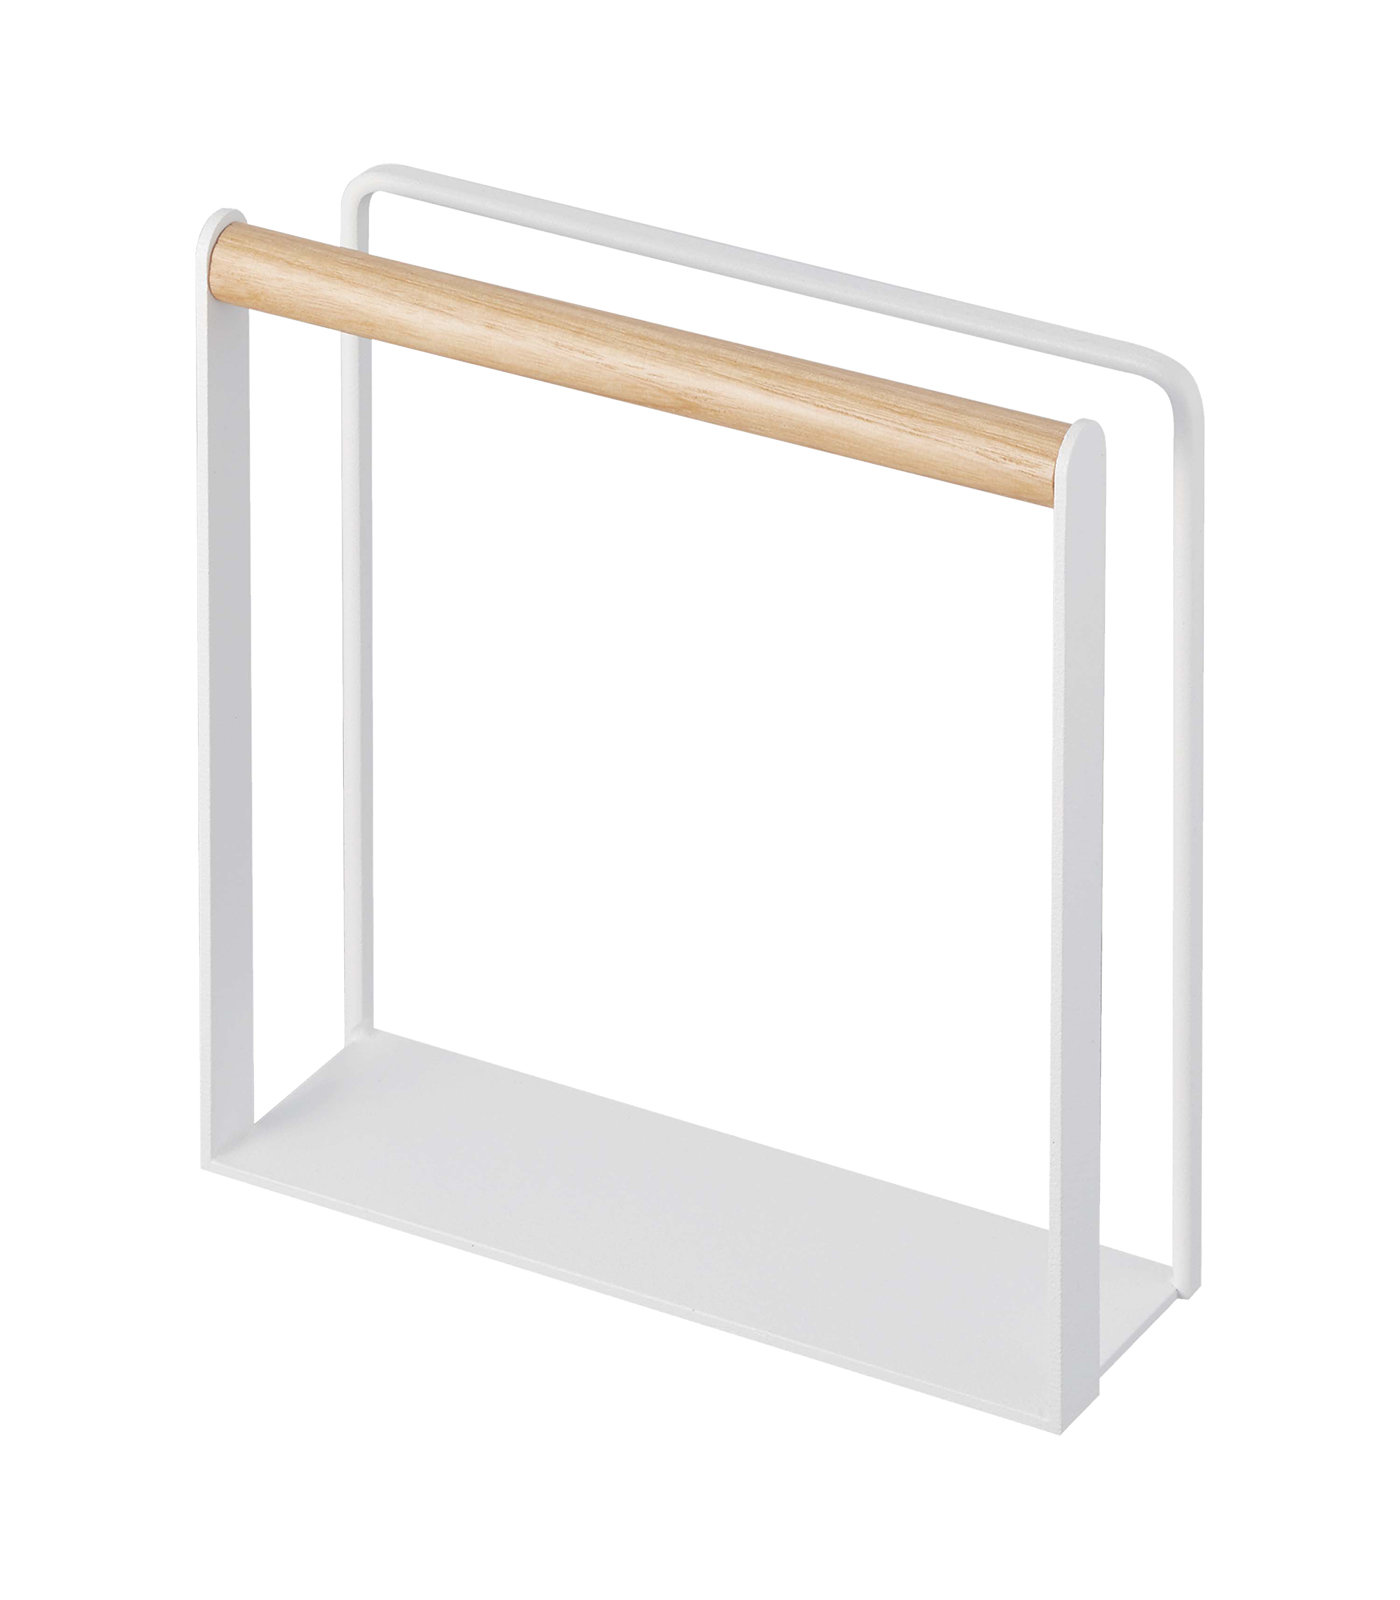 https://assets.wfcdn.com/im/93921966/compr-r85/2349/234975512/yamazaki-home-napkin-holder-kitchen-storage-table-organizer-steel-wood.jpg